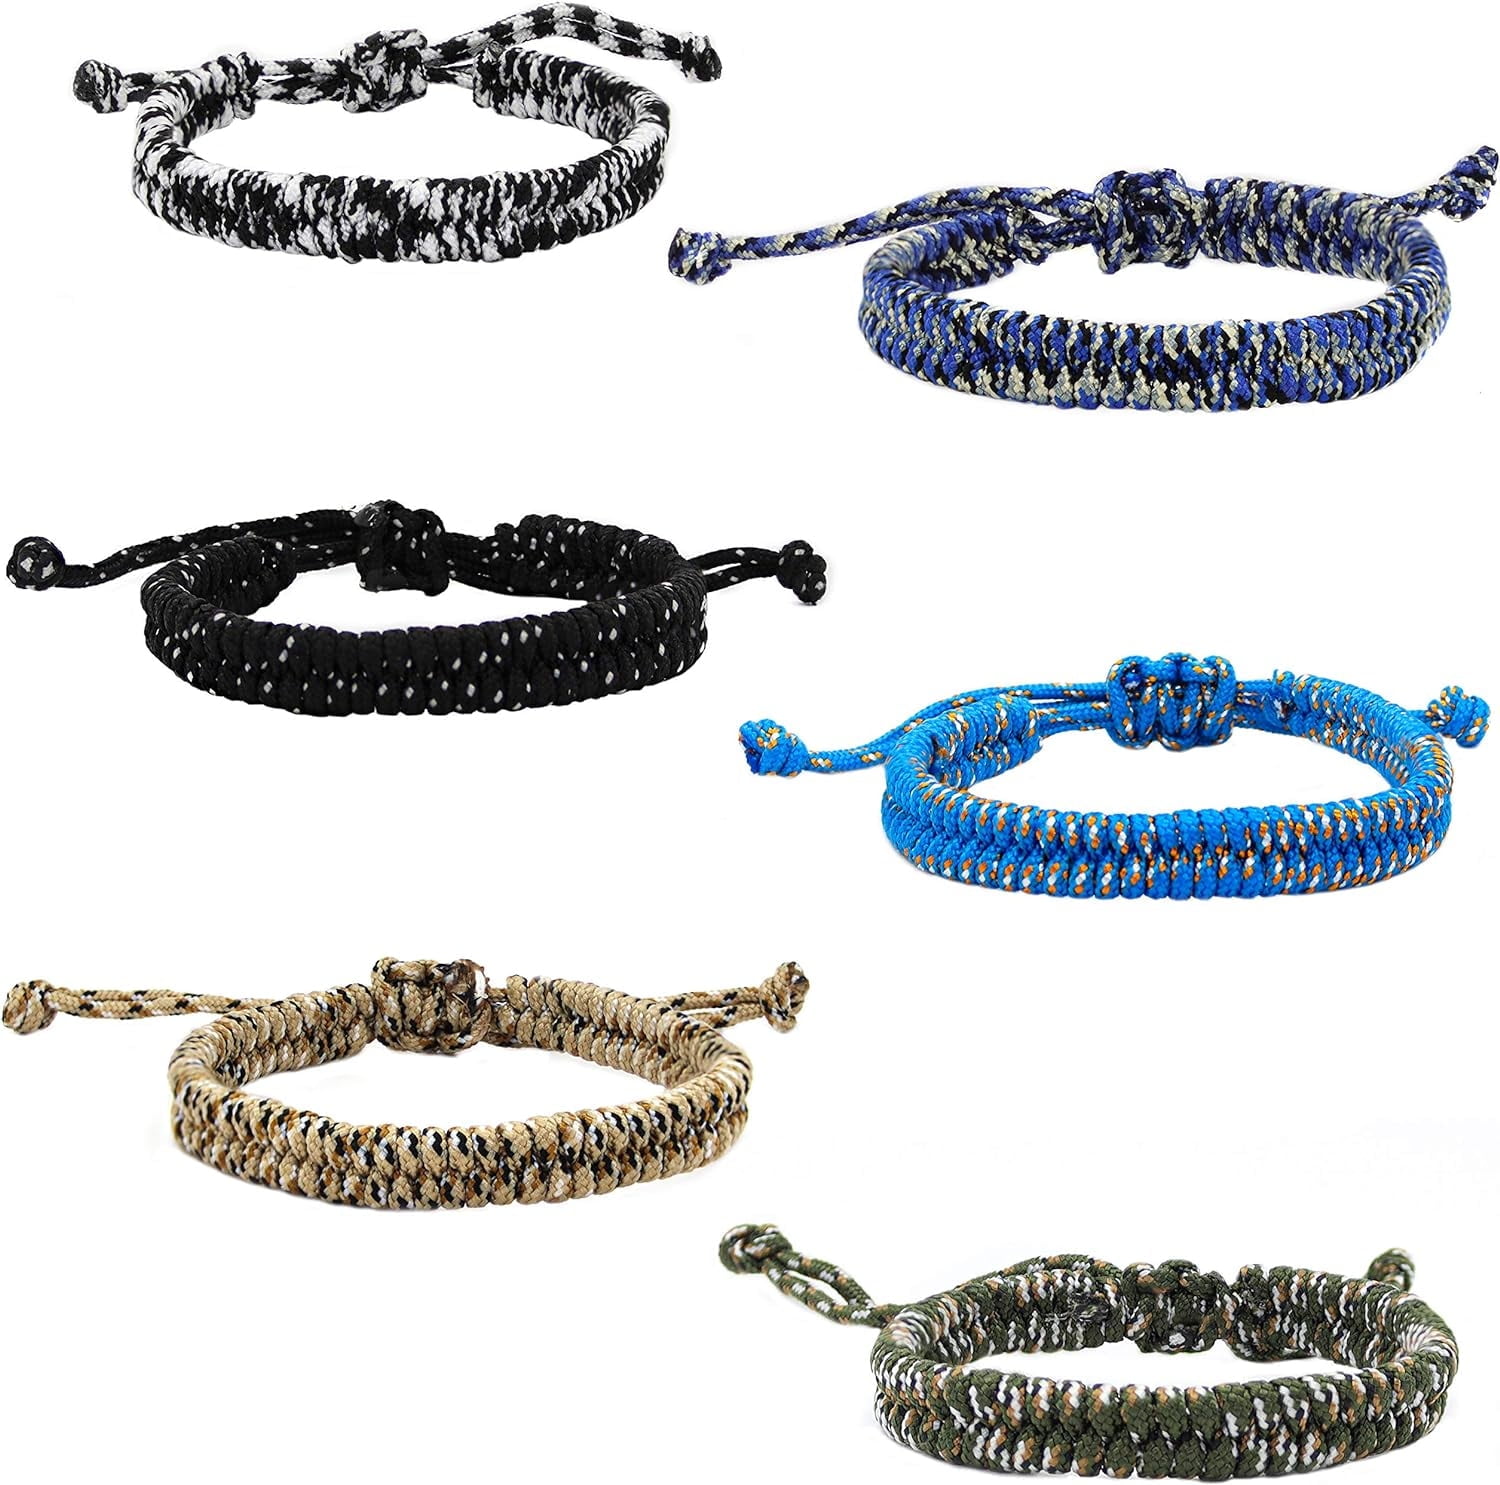 6 Paracord Bracelets for Boys, Woven Braided Friendship Bracelet Pack 